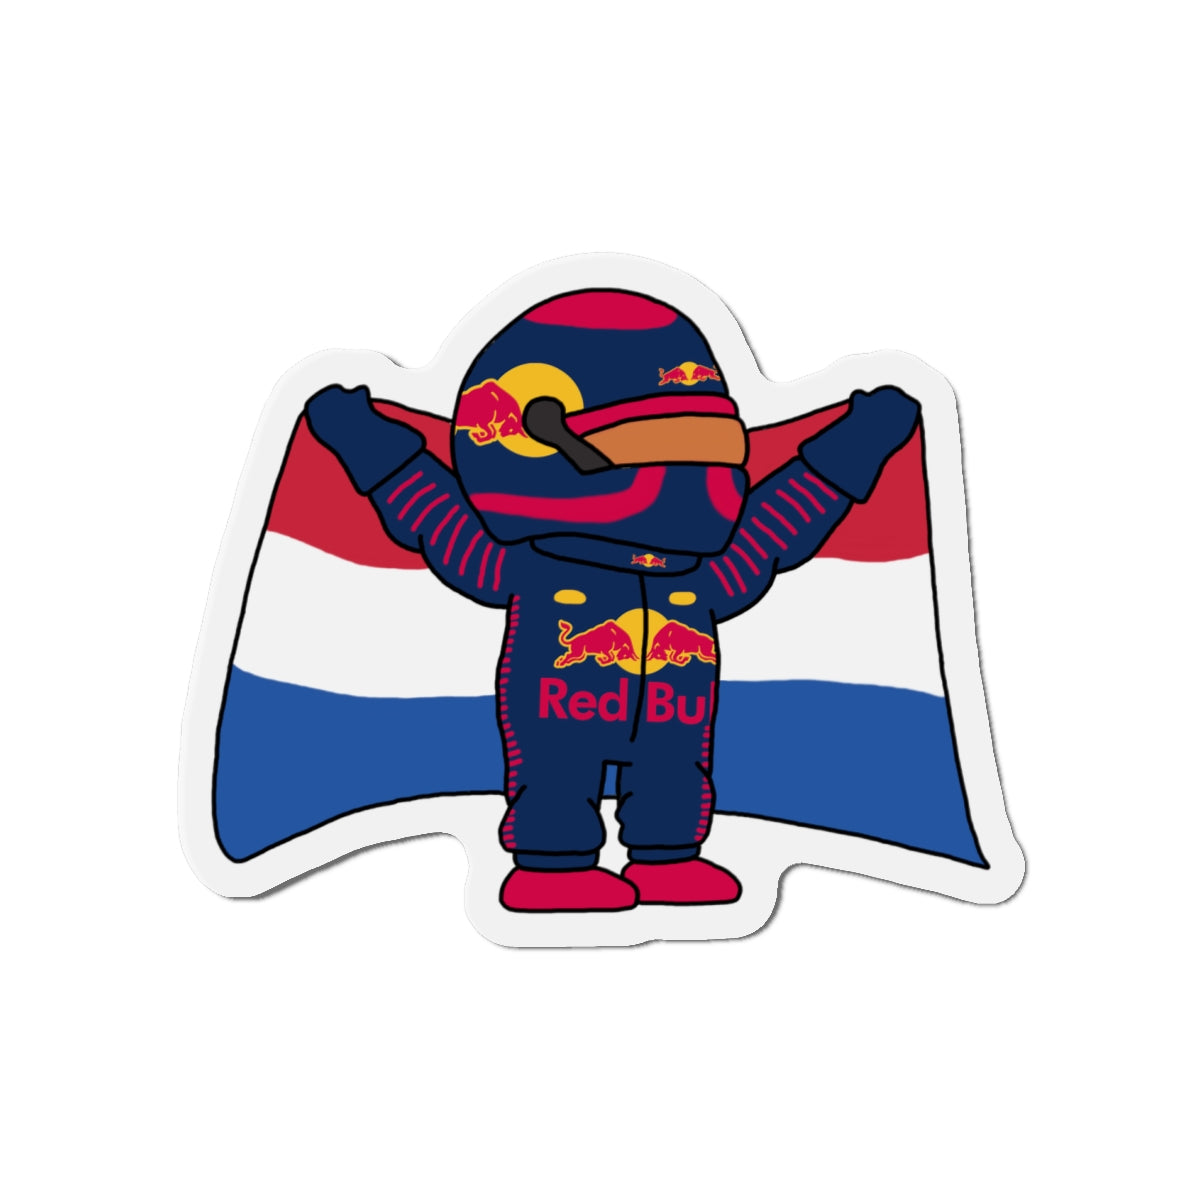 NeVerStappen Red Bull Formula 1 F1 Max Verstappen Magnets Next Cult Brand F1, Max Verstappen, Red Bull